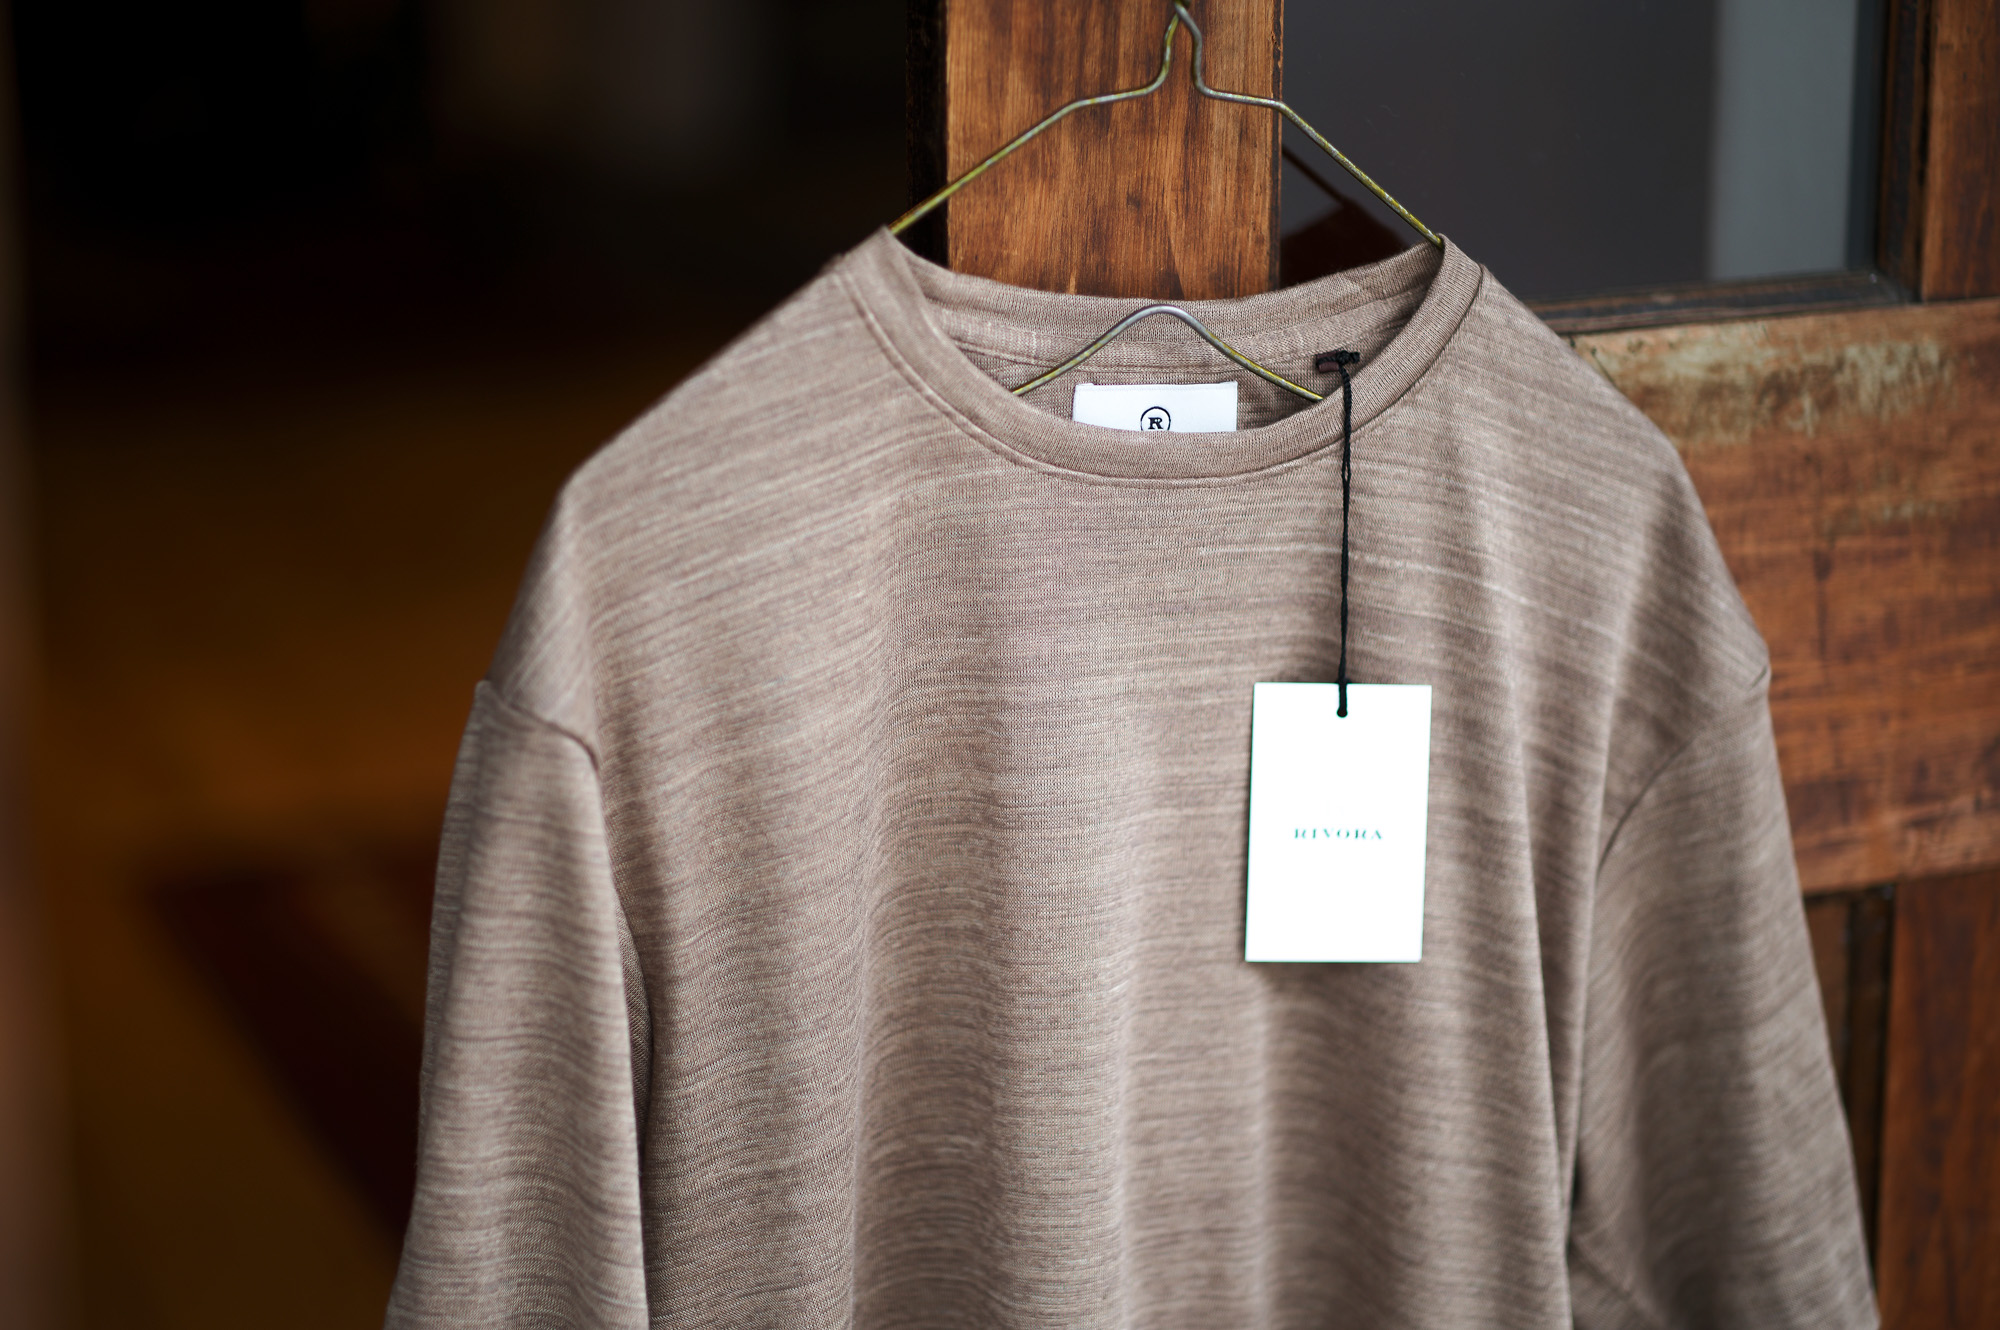 RIVORA (リヴォラ) Vintage Linen Layered T-Shirts ヴィンテージ リネン レイヤード Tシャツ TAUPE (トープ・081) MADE IN JAPAN (日本製) 2023 春夏新作  【入荷しました】【フリー分発売開始】愛知 名古屋 Alto e Diritto altoediritto アルトエデリット